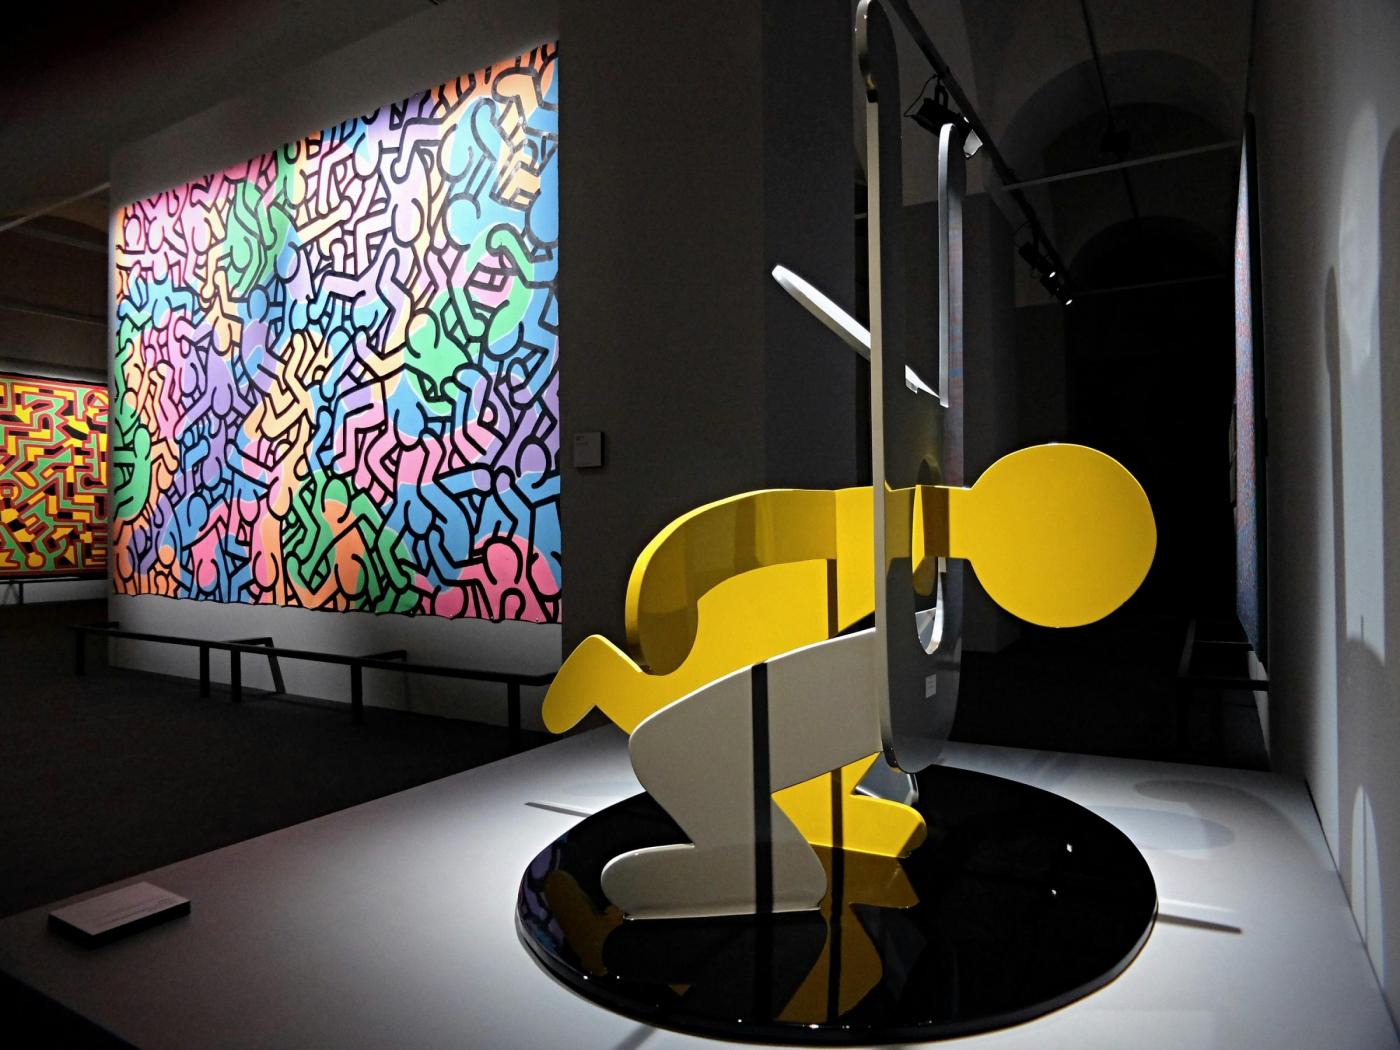 Mostra Keith Haring a Milano: a Palazzo Reale dal 21 febbraio al 18 giugno 2017